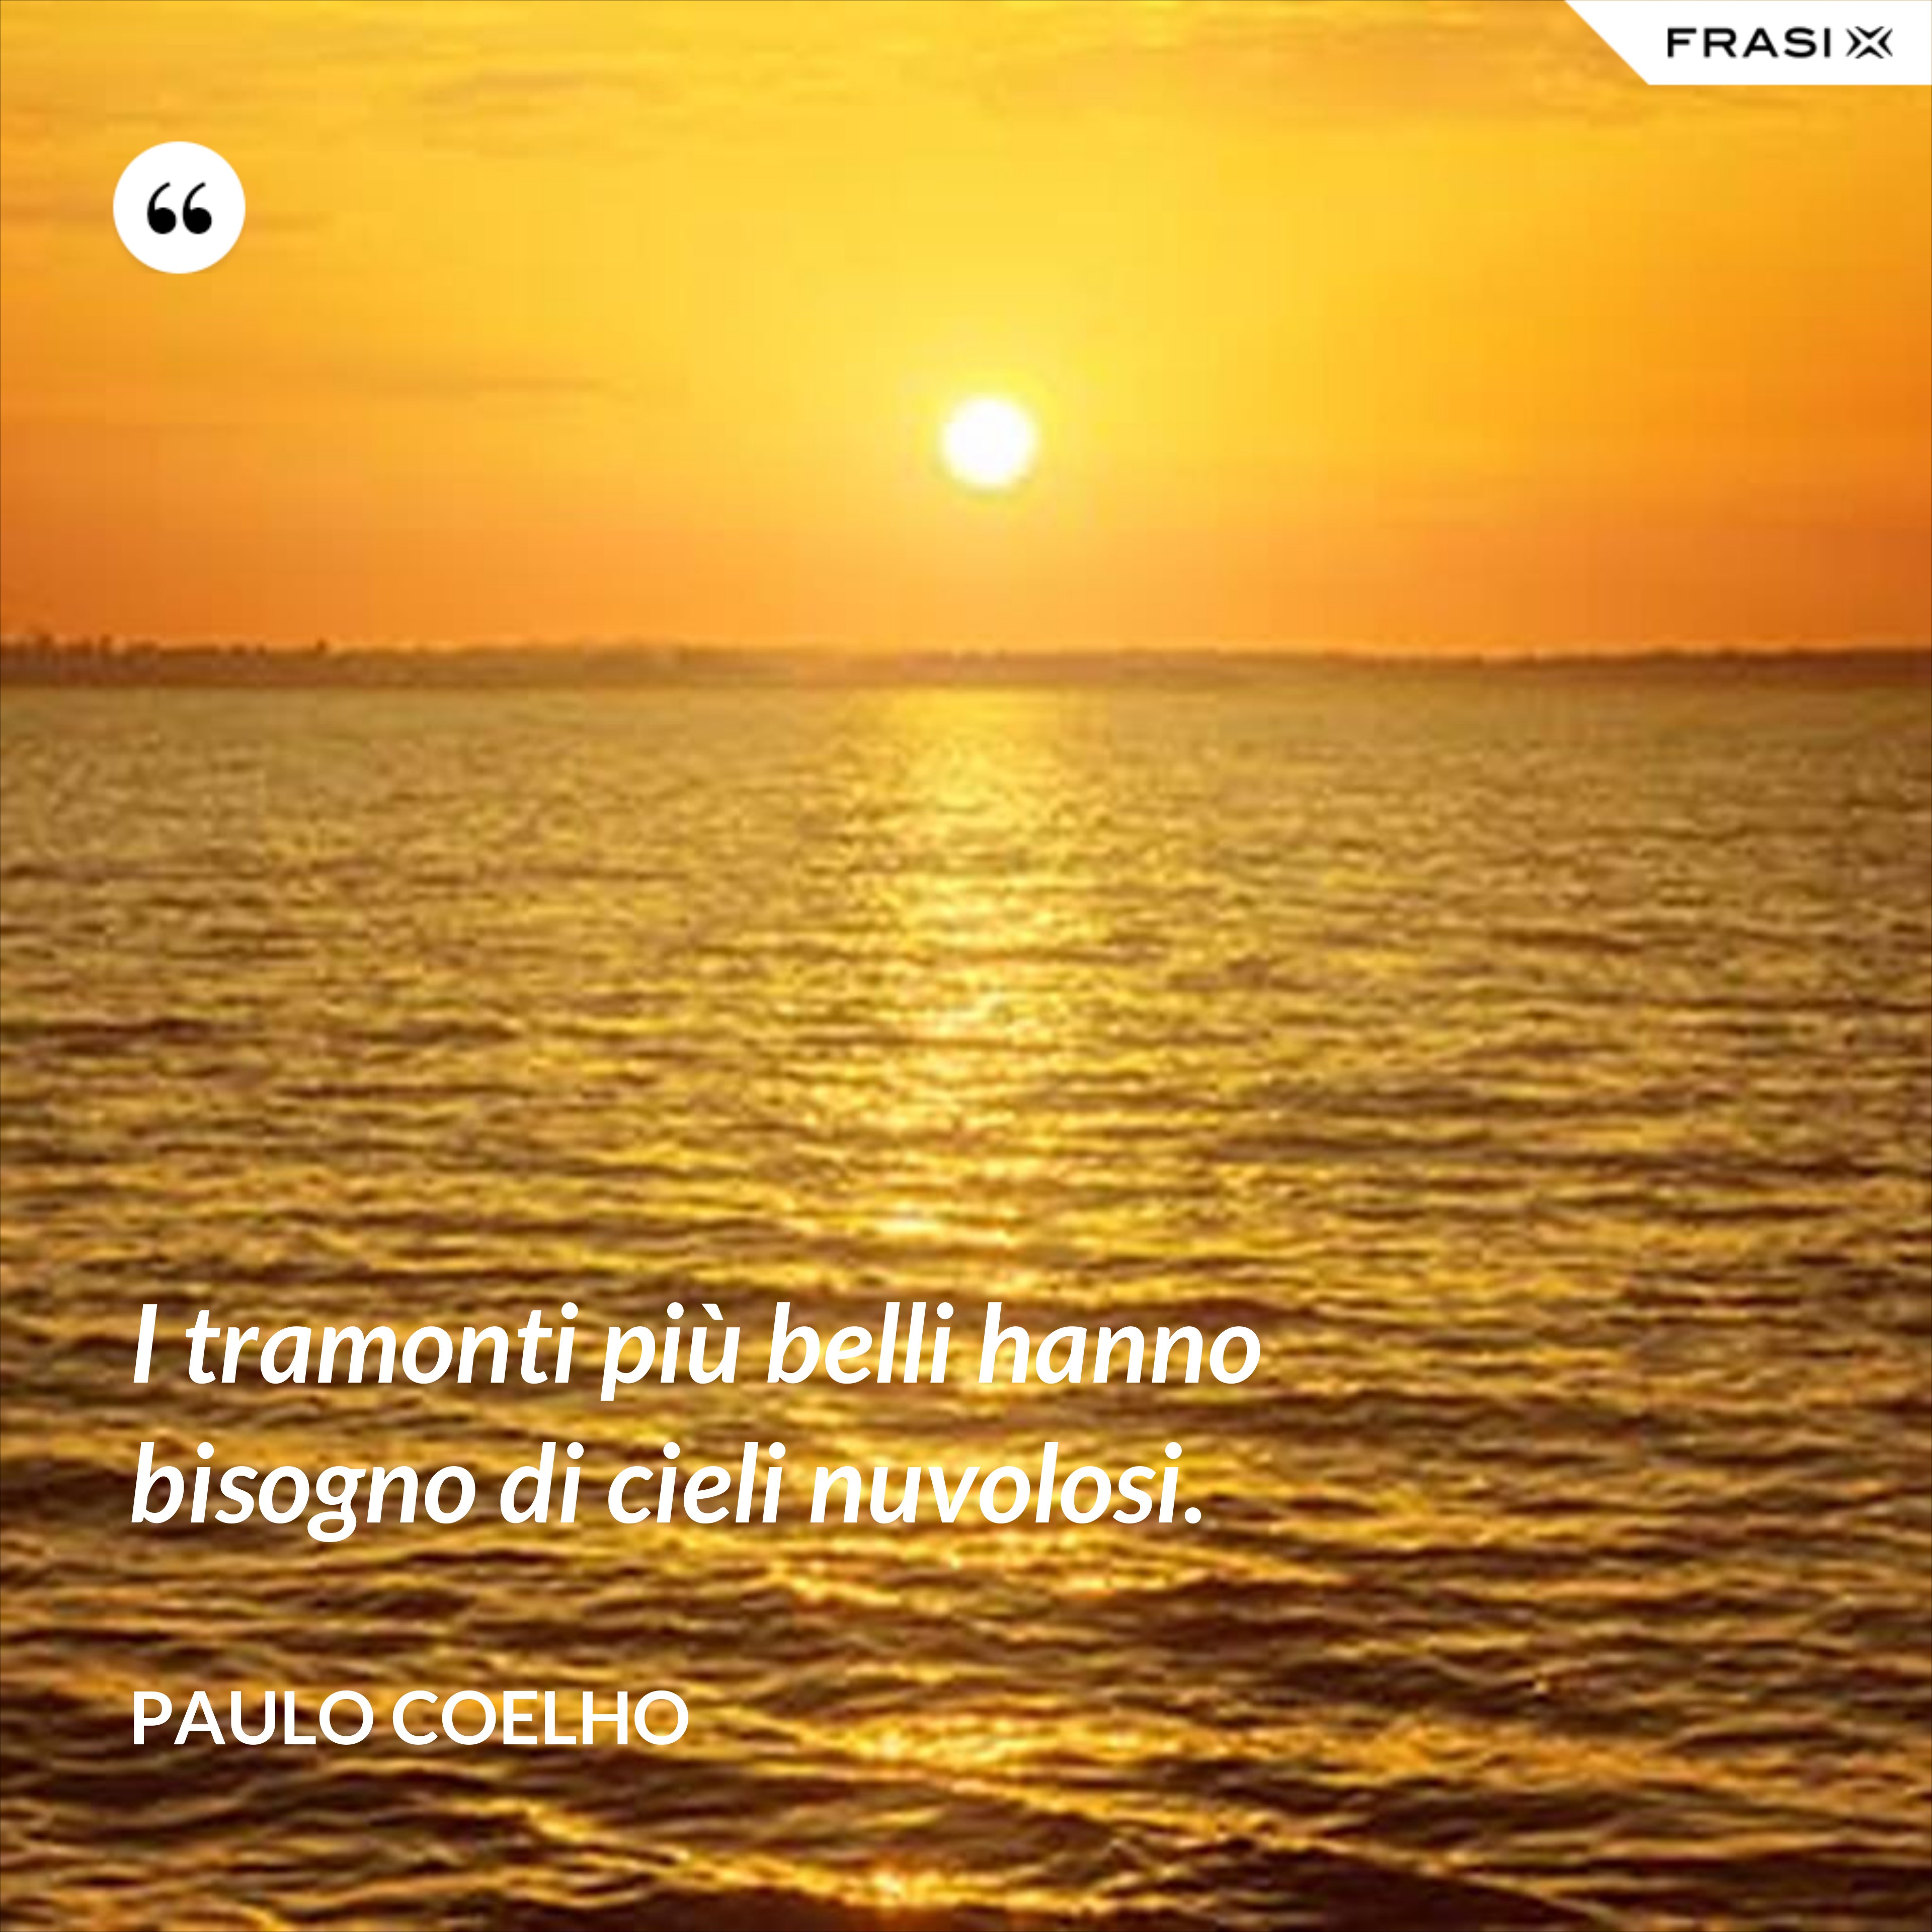 I tramonti più belli hanno bisogno di cieli nuvolosi. - Paulo Coelho